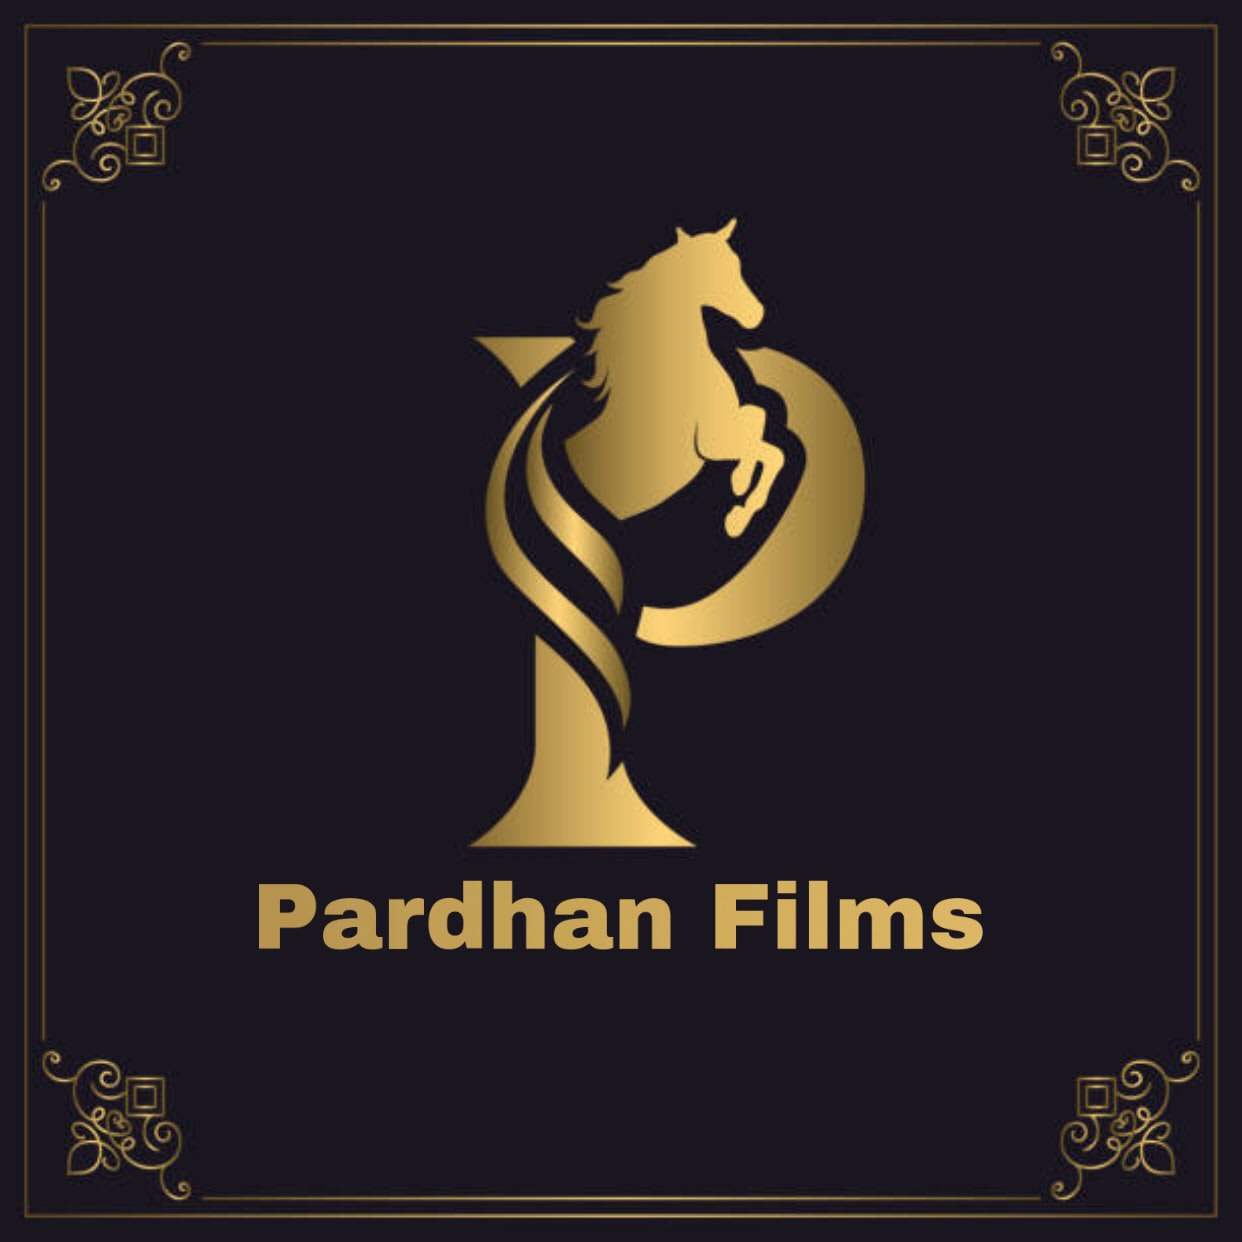 Pardhan Films